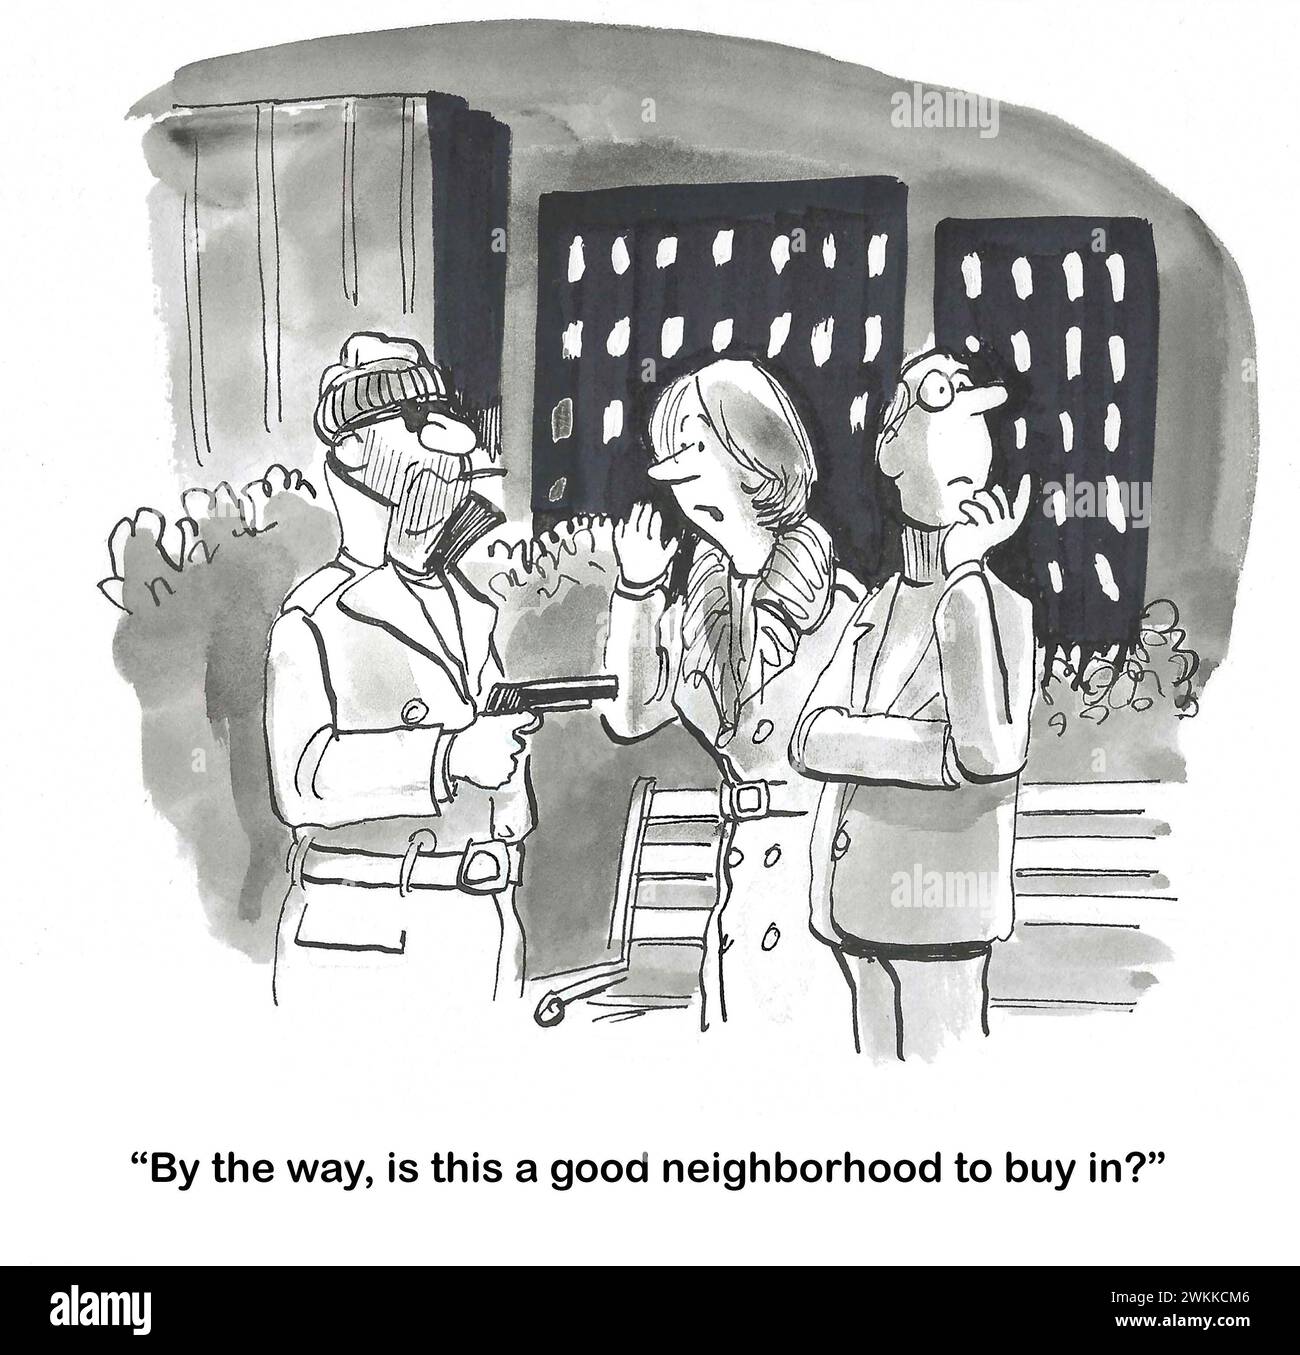 Il cartone animato BW di una coppia rapinata con la pistola. La donna chiede al rapinatore se questo è un "buon quartiere da comprare". Foto Stock